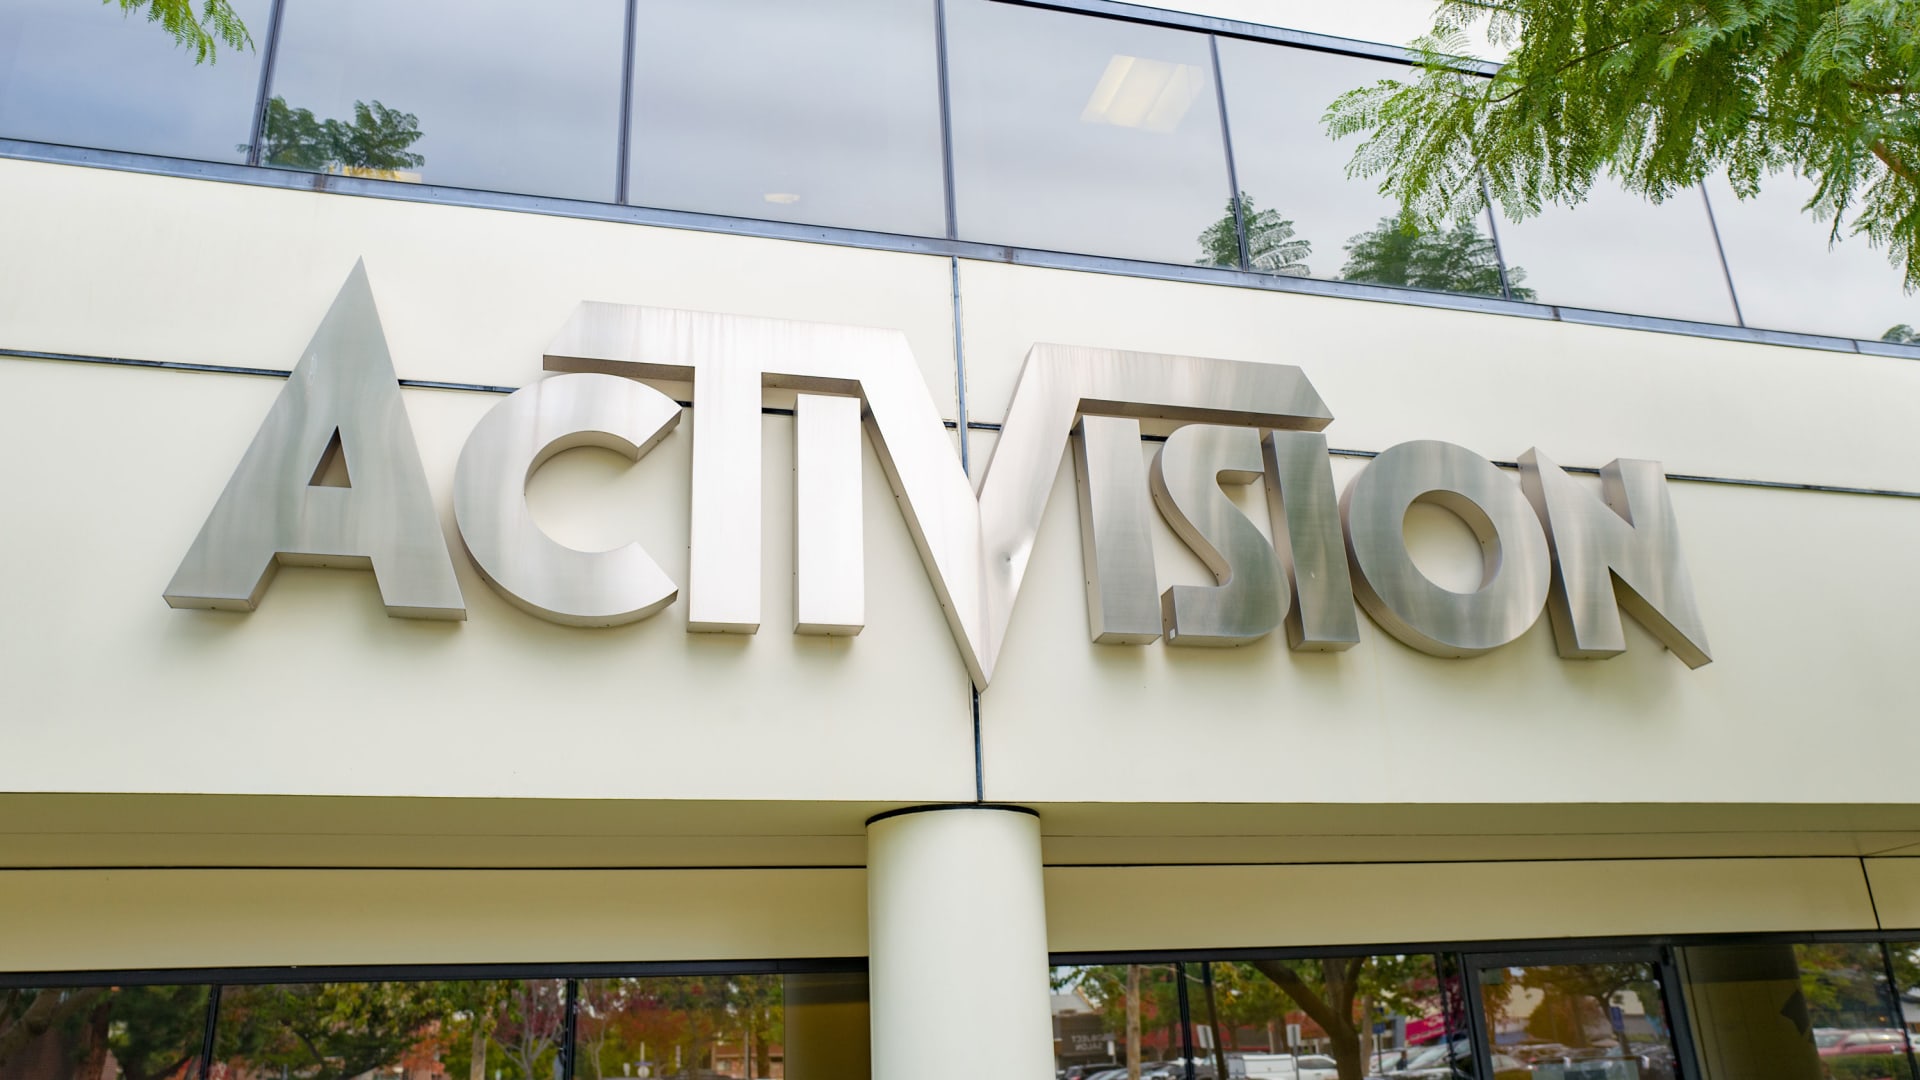 Activision's headquarters in Santa Monica, California.